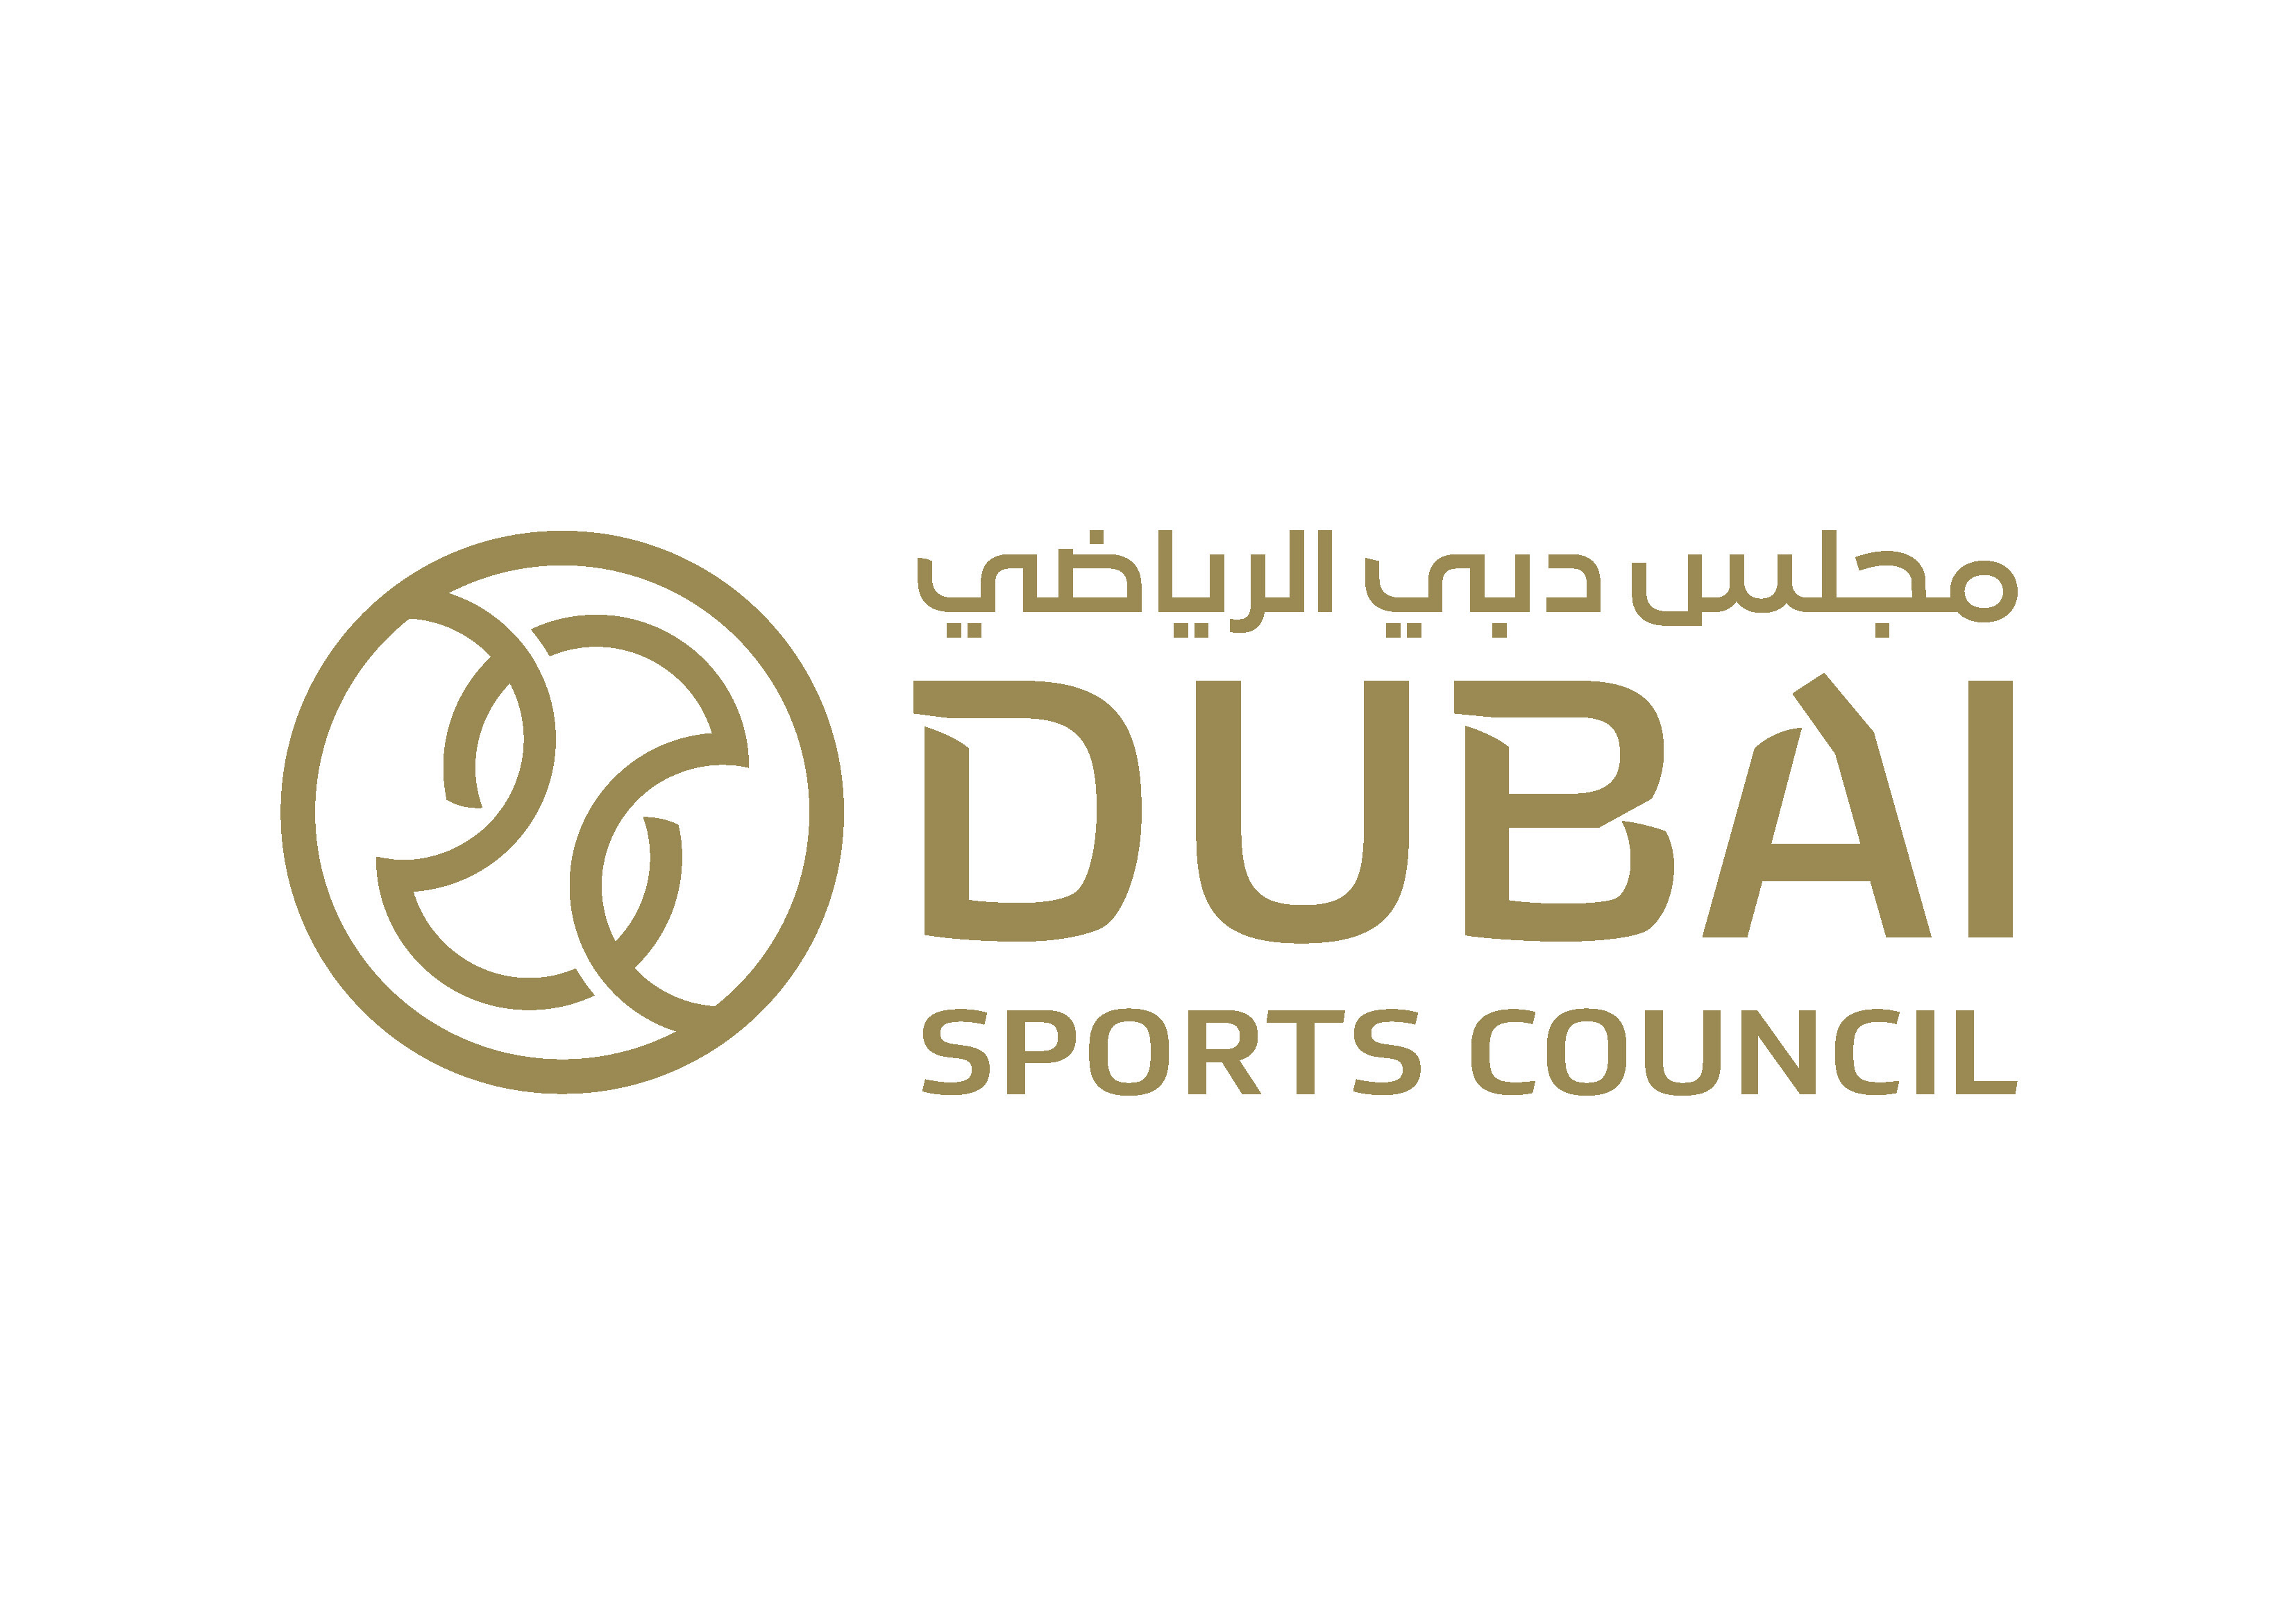 يعود سباق دبي للسيدات ، أكبر حدث رياضي نسائي في العالم العربي ، في نسخته التاسعة